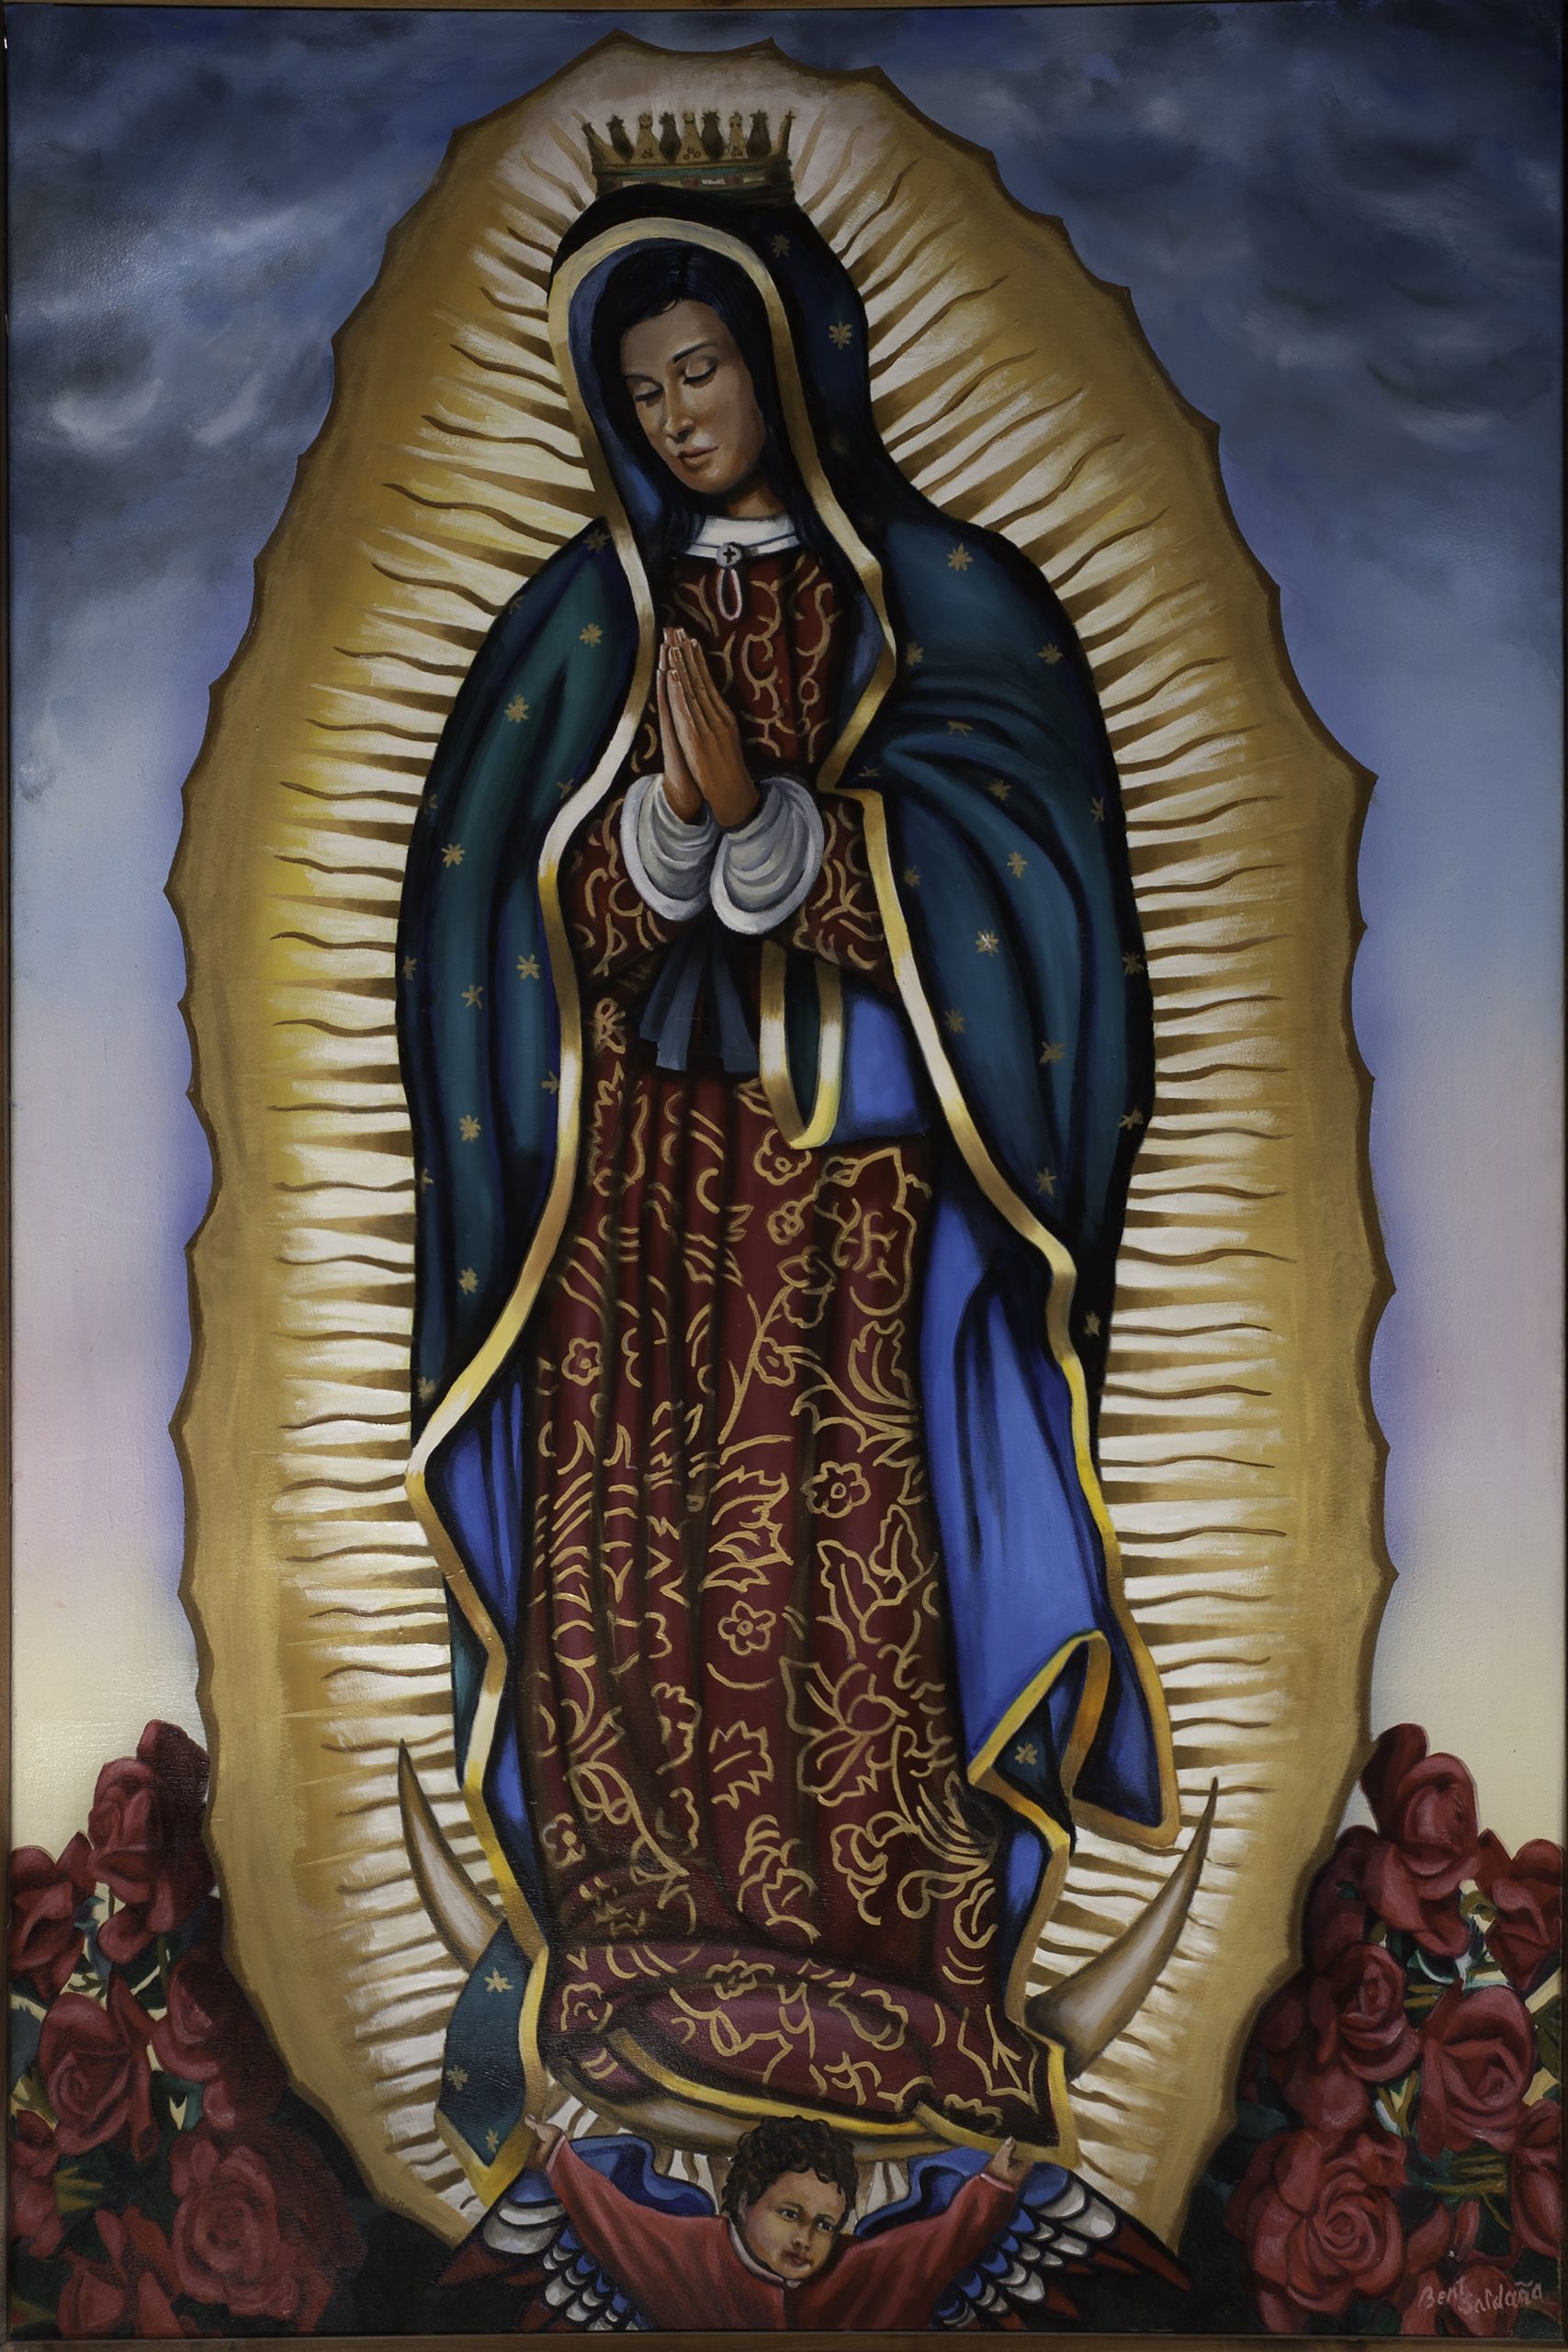 La Virgen de Guadalupe